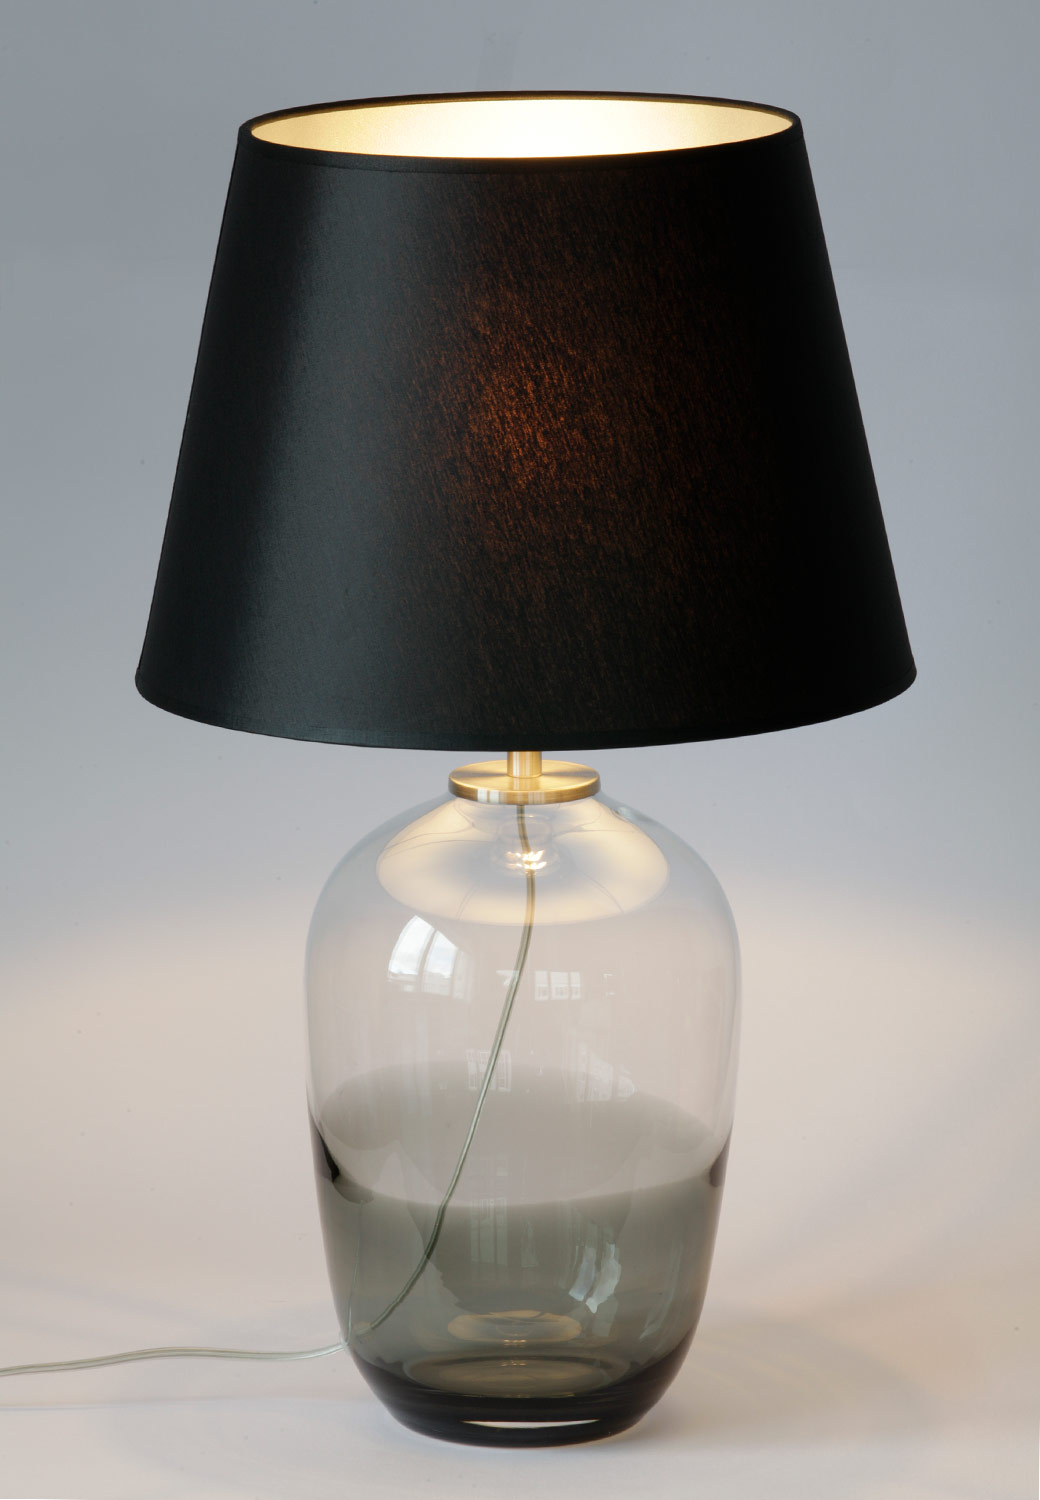 Faszinierende Glas-Vasenlampe MALI: Kleines Modell, schwarzer Schirm